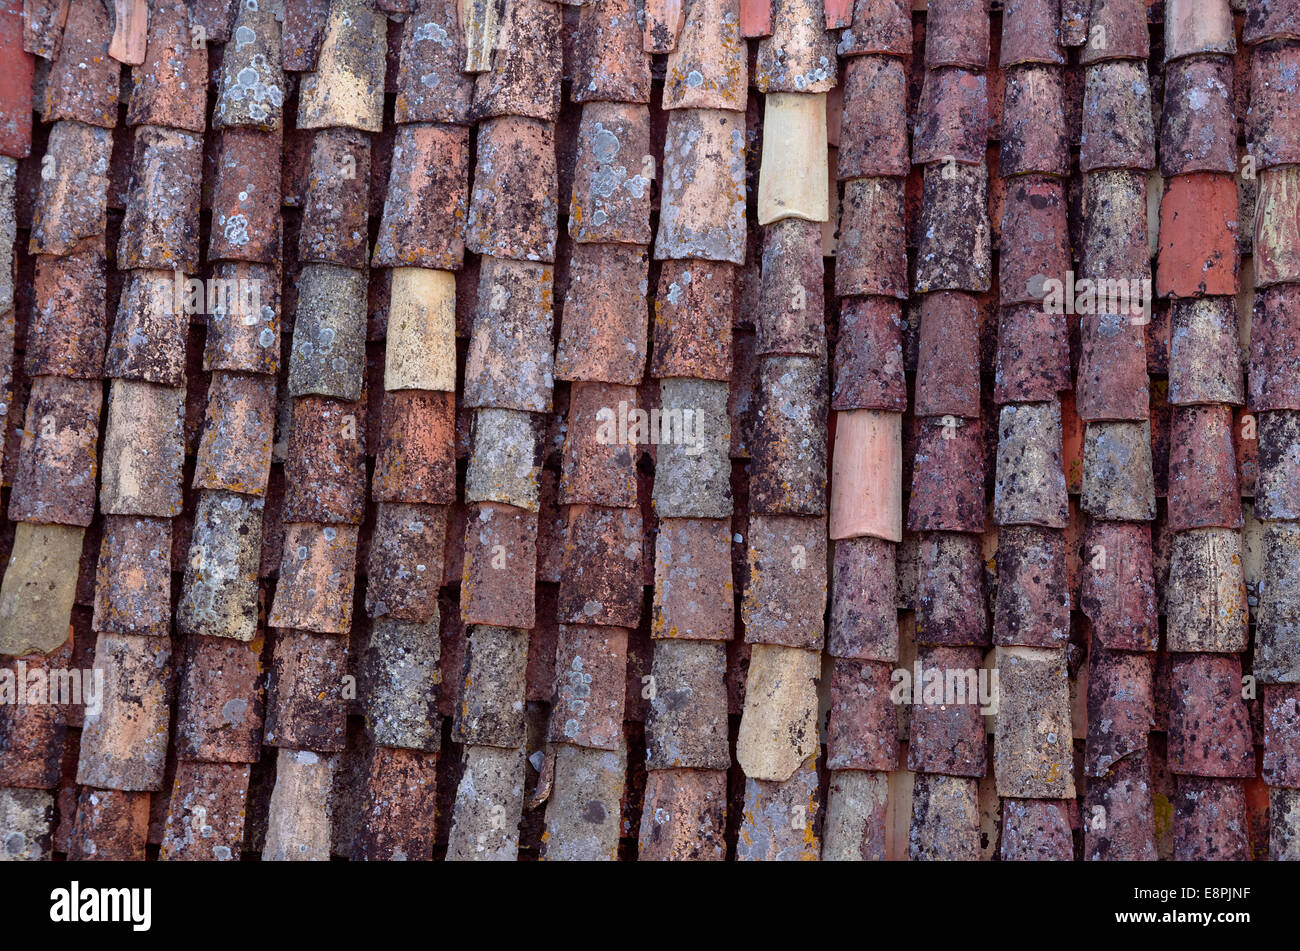 Rustic Roof Tiles at Dubrovnik Croatia Stock Photo